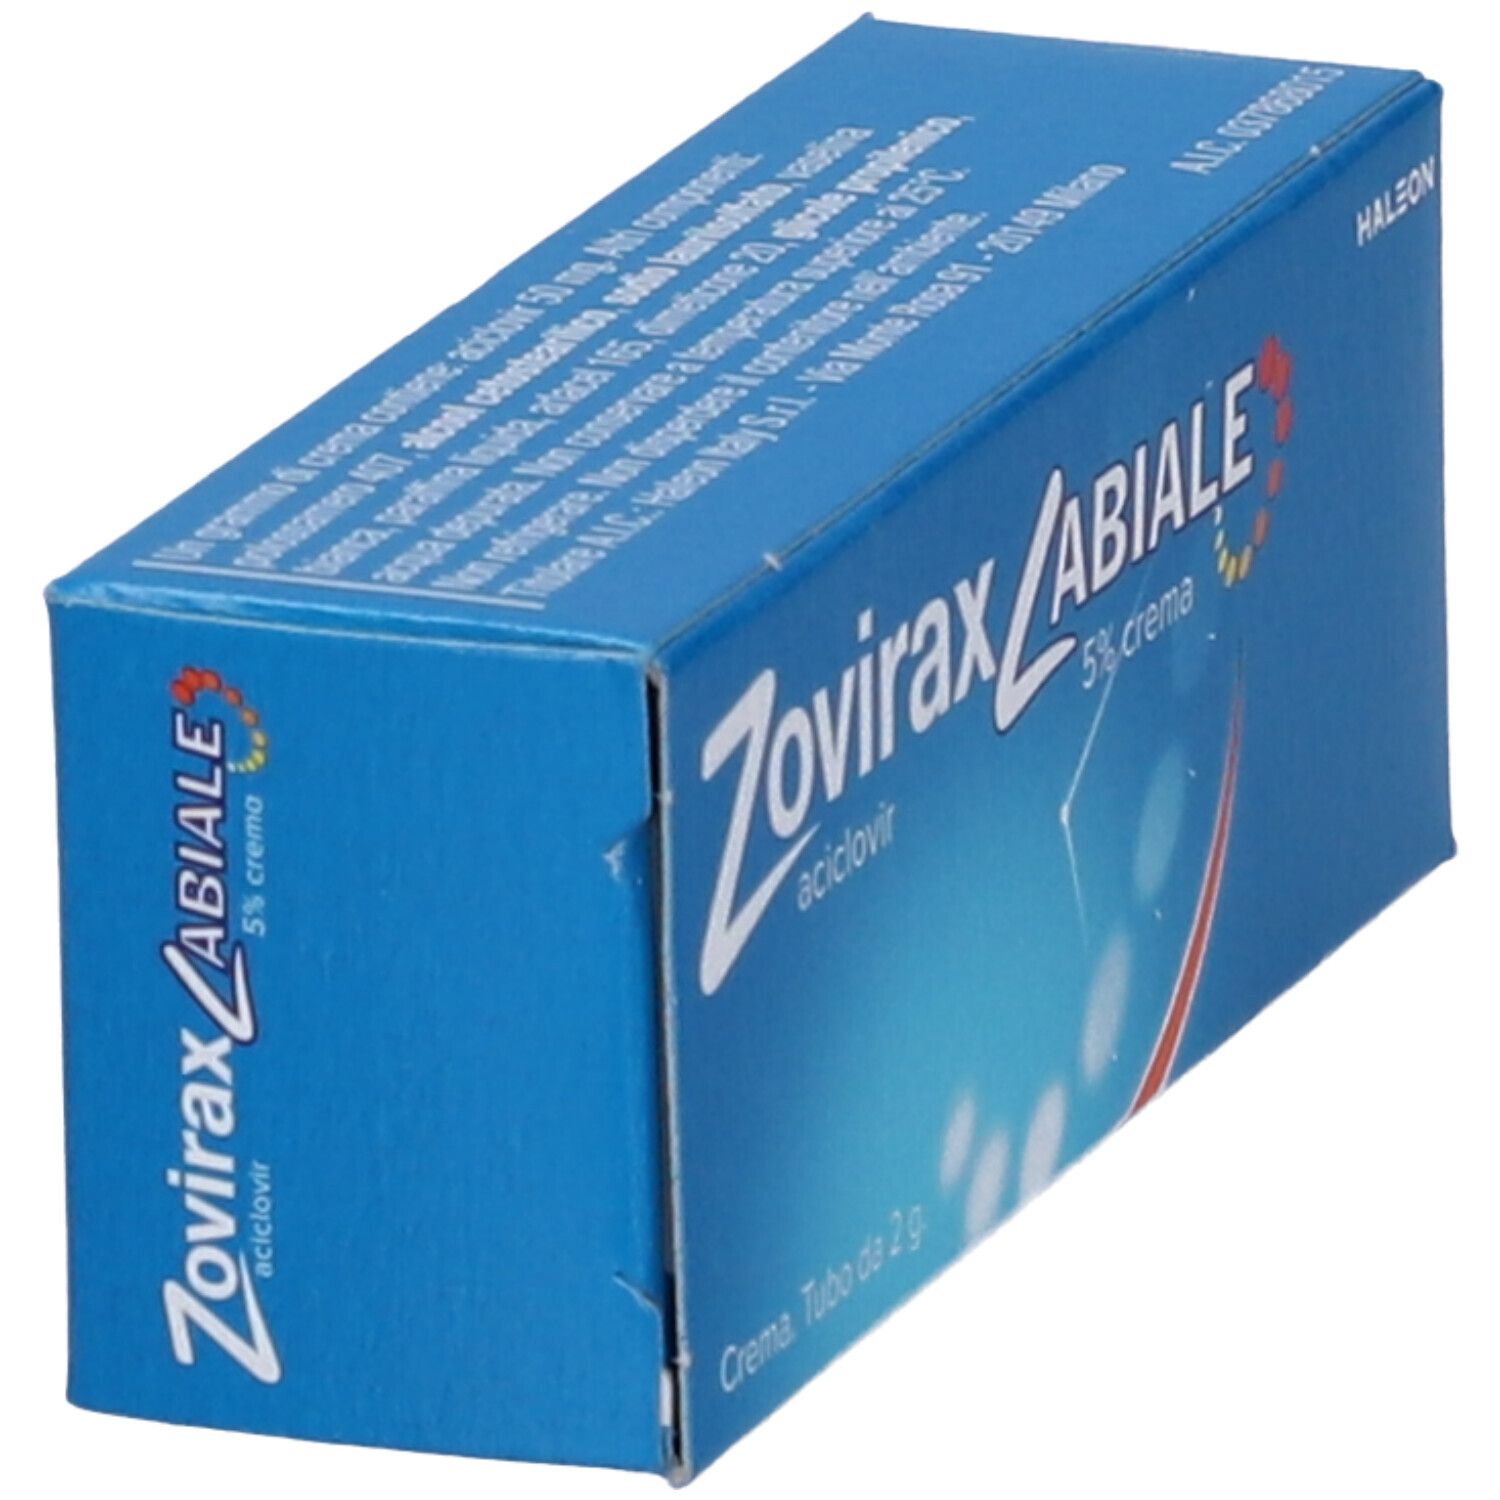 Zovirax Labiale® 5% Crema